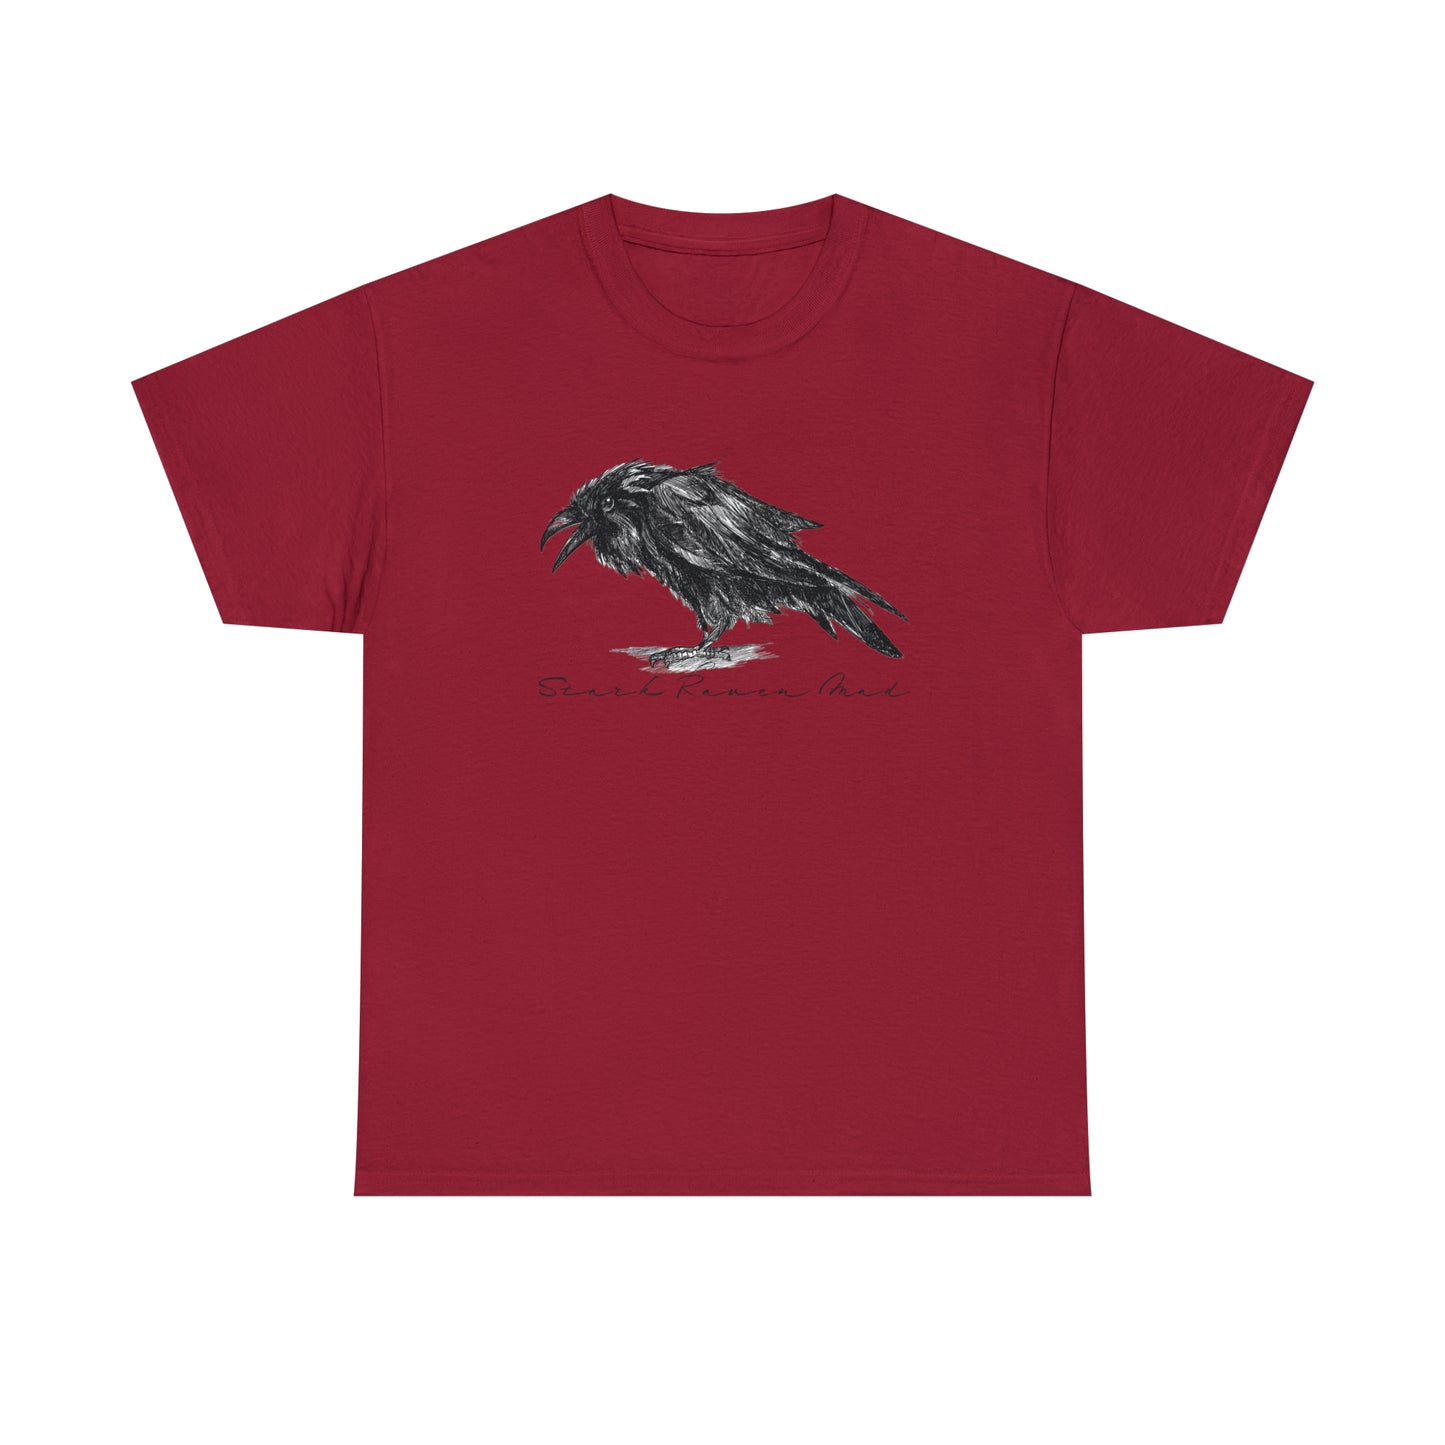 Raven T-Shirt For Edgar Allan Poe TShirt For Literary T Shirt For Scandinavian Shirt For Odin TShirt For Norse God Tee